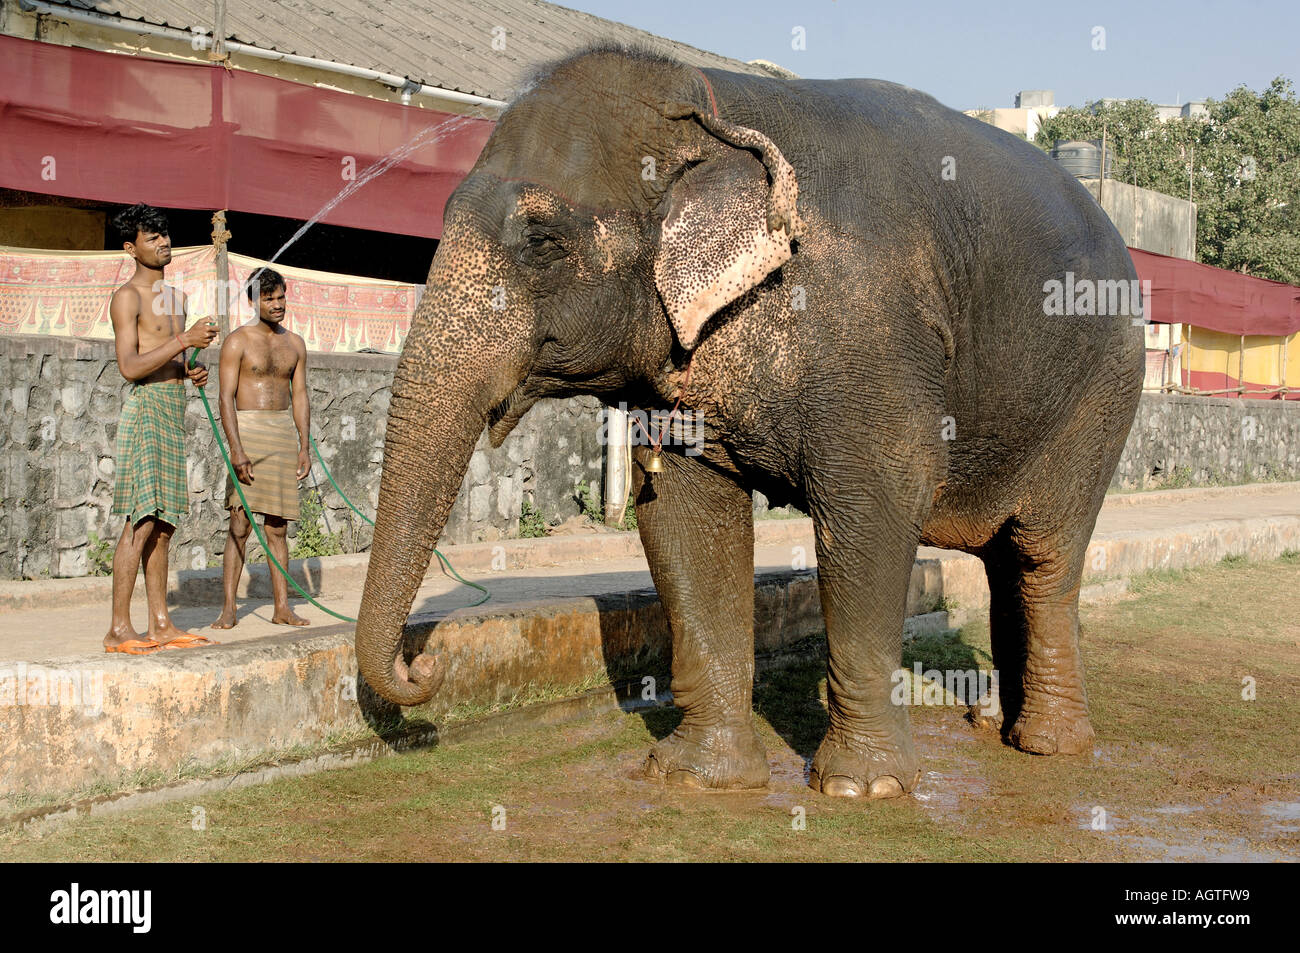 HMA79940 éléphant asiatique Elephas maximus étant donné un bain par son Mahavat l'Inde Banque D'Images